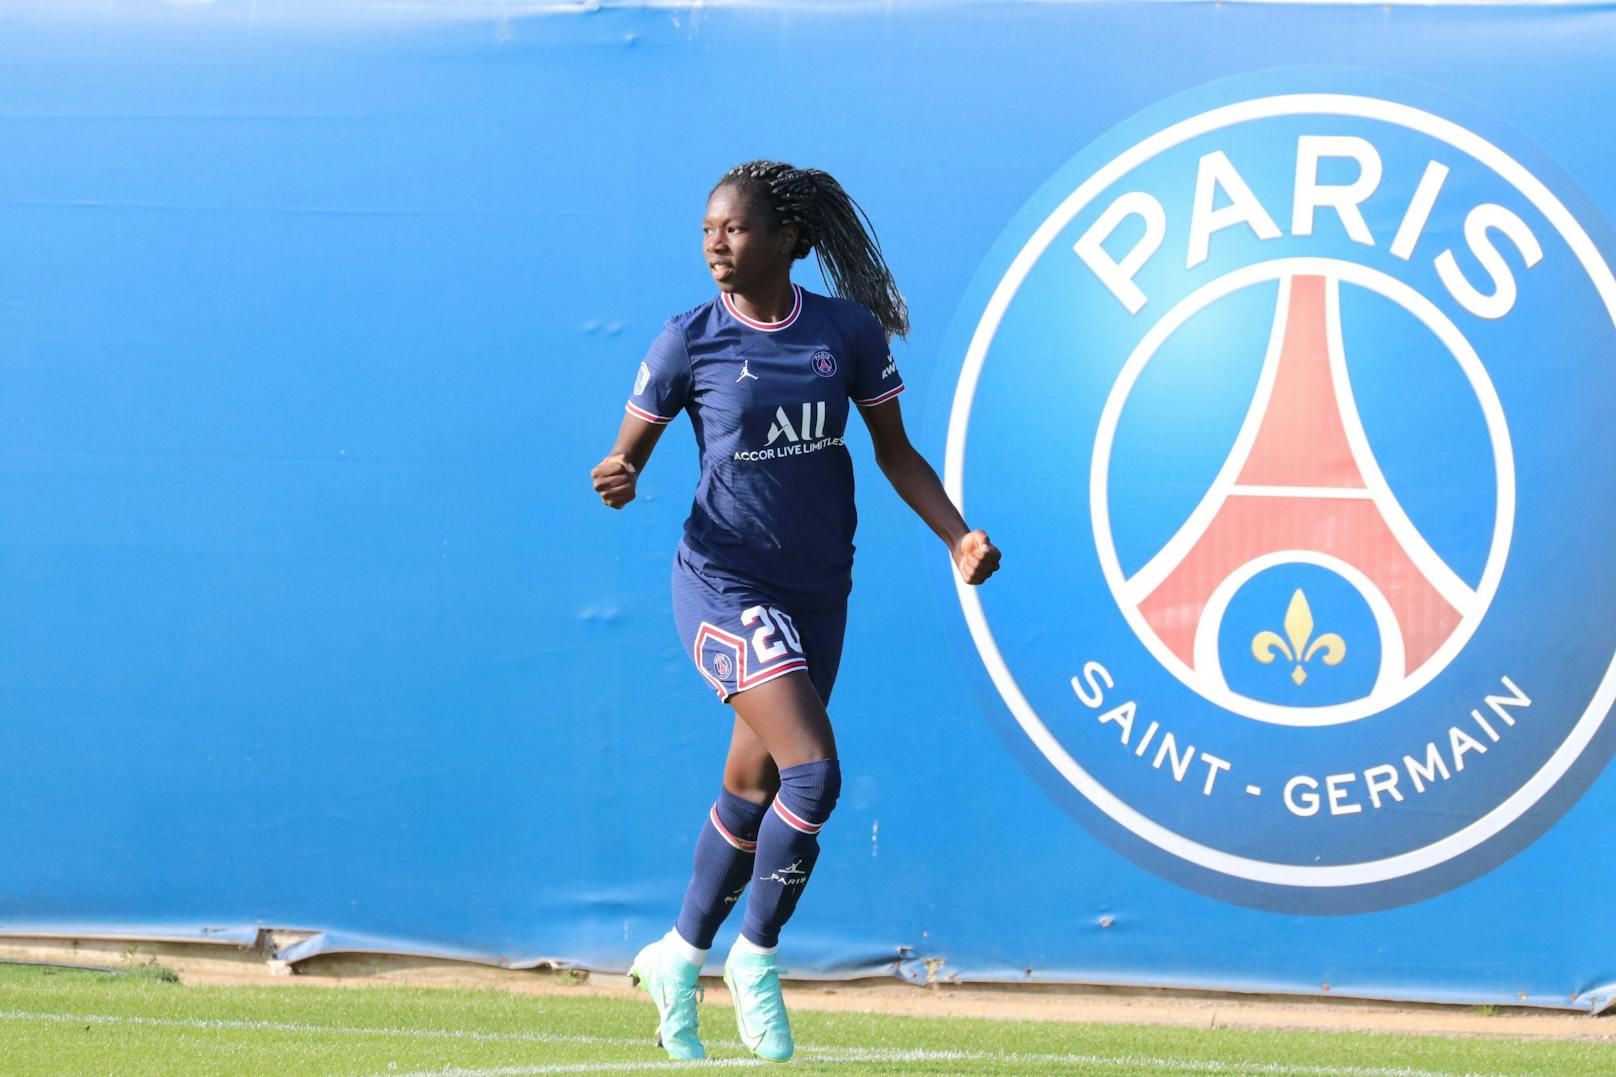 Aminata Diallo wurde von der französischen Polizei festgenommen. Sie soll zwei unbekannte Täter damit beauftragt haben, ihre Mitspielerin Kheira Hamraoui zu überfallen und zu verletzen, was auch geschah. Die Spielerin wurde durch Schläge und Tritte gegen ihre Beine schwer verletzt. Diallo selbst saß im Auto mit Hamraoui am Steuer, lockte sie in die Falle. Hintergrund: Hamraoui spielt bei PSG und im französischen Nationalteam auf ihrer Position. Diallo wollte mehr Spielzeit.